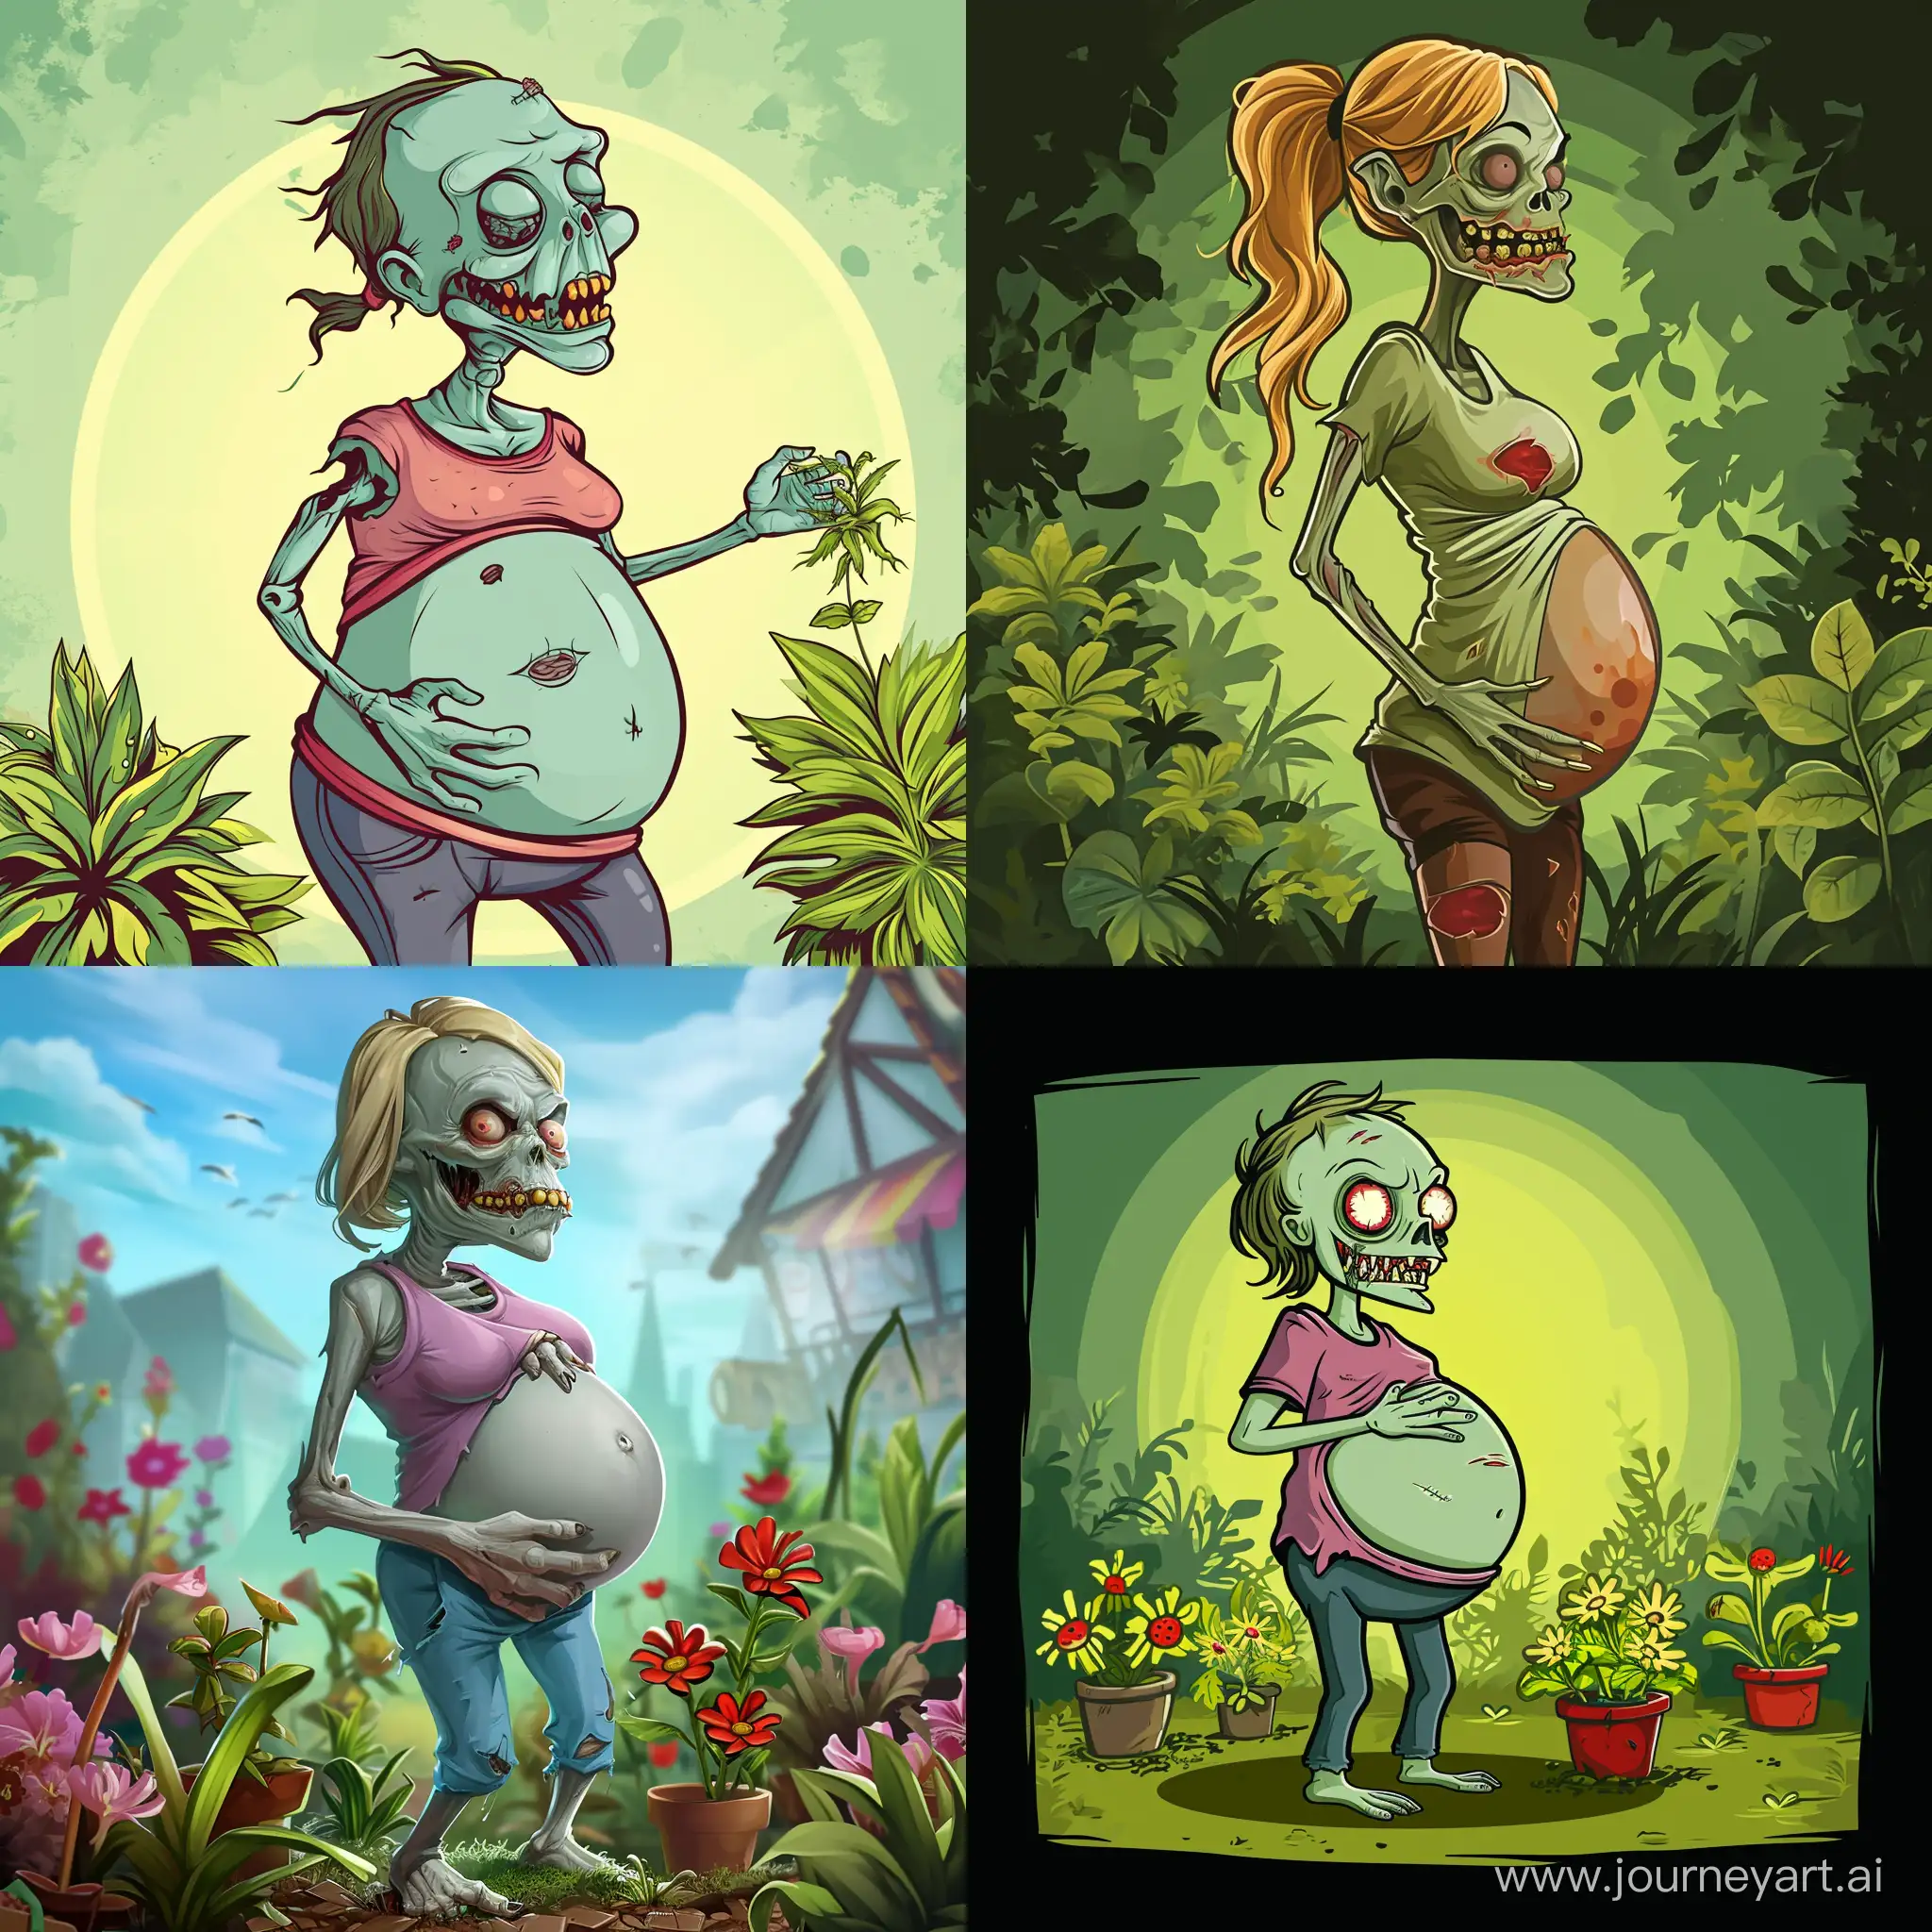 Epic-Battle-Pregnant-Zombie-Confronts-Plants-in-Intense-Showdown